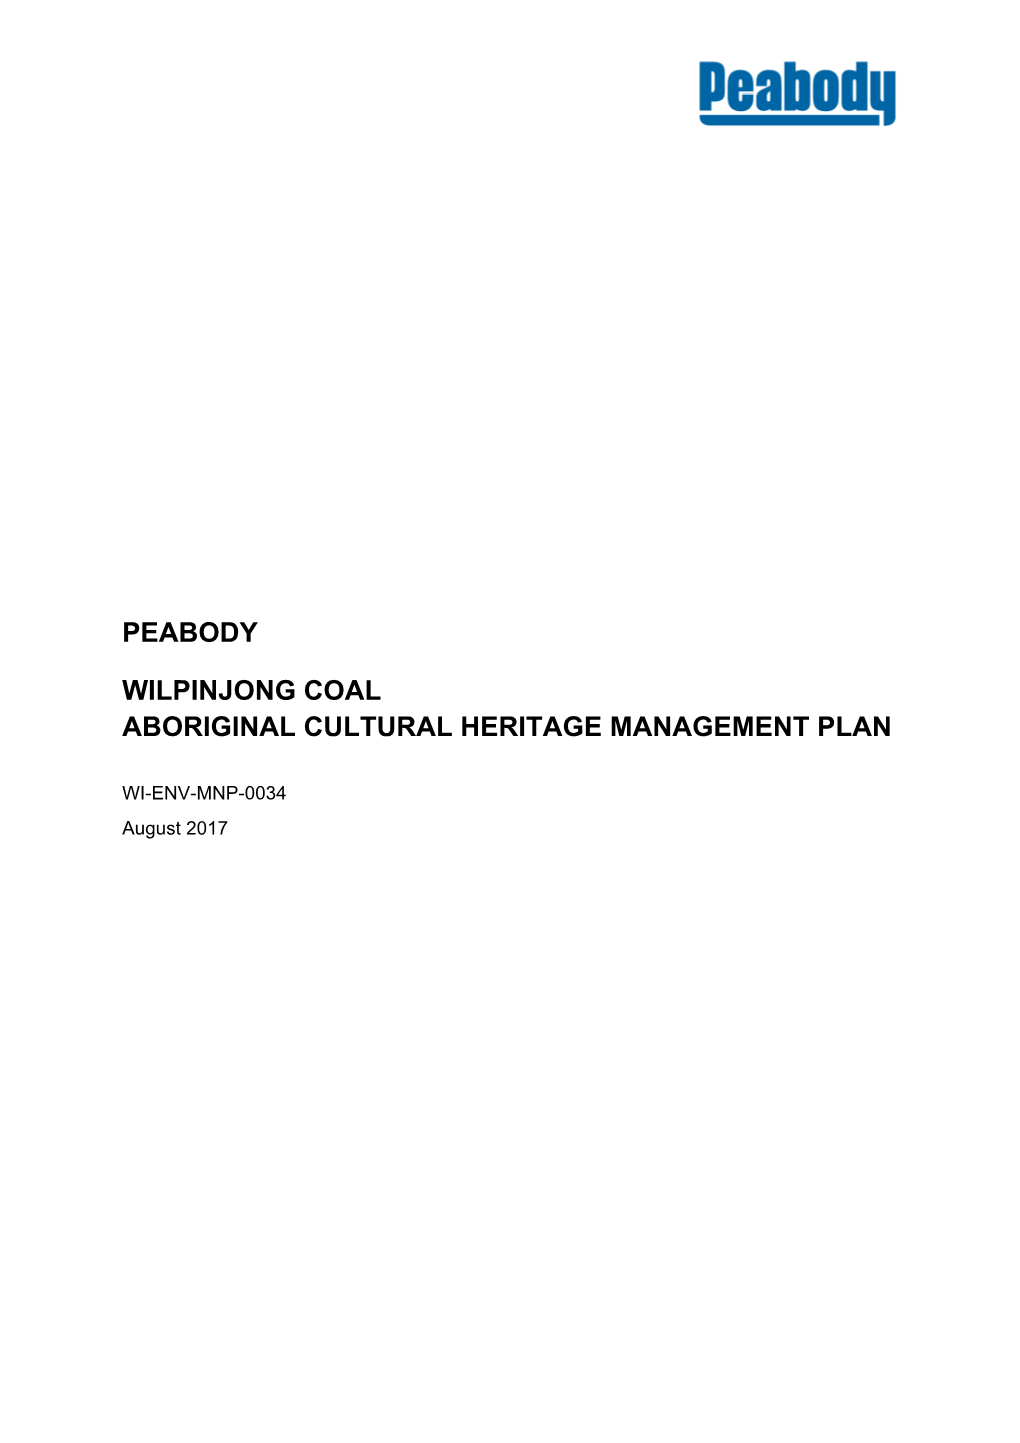 Peabody Wilpinjong Coal Aboriginal Cultural